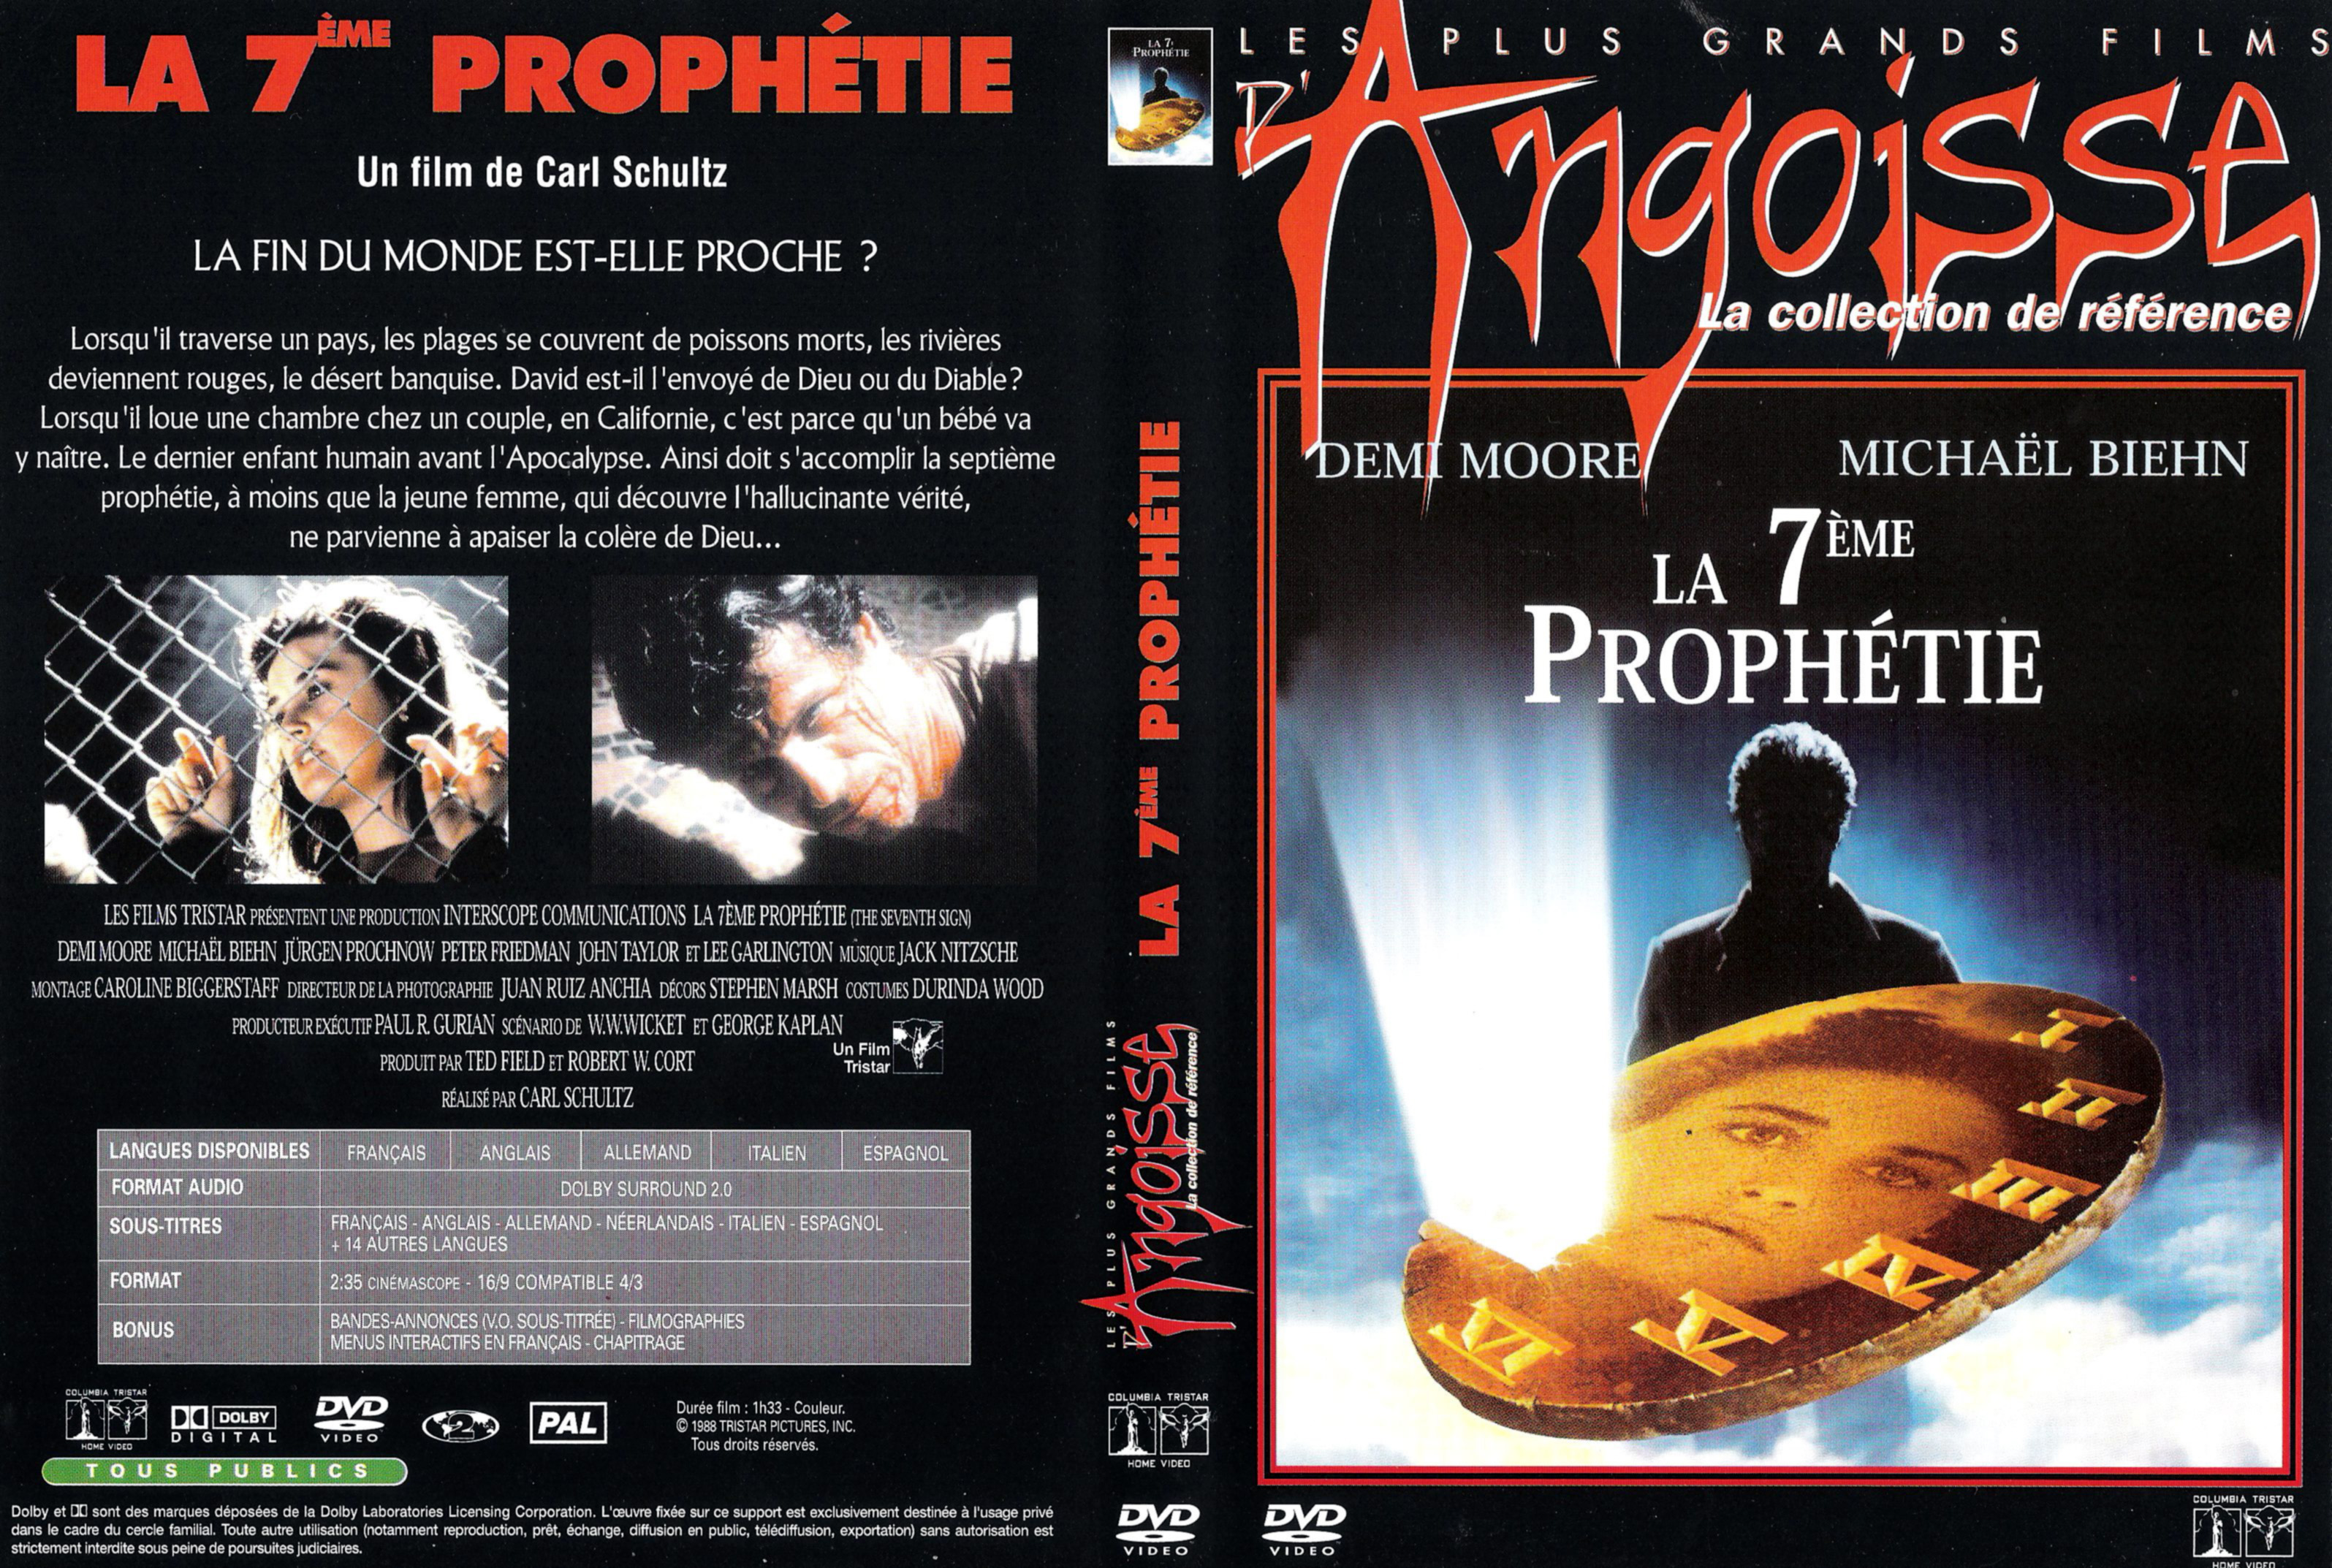 Jaquette DVD La 7 eme prophetie v2